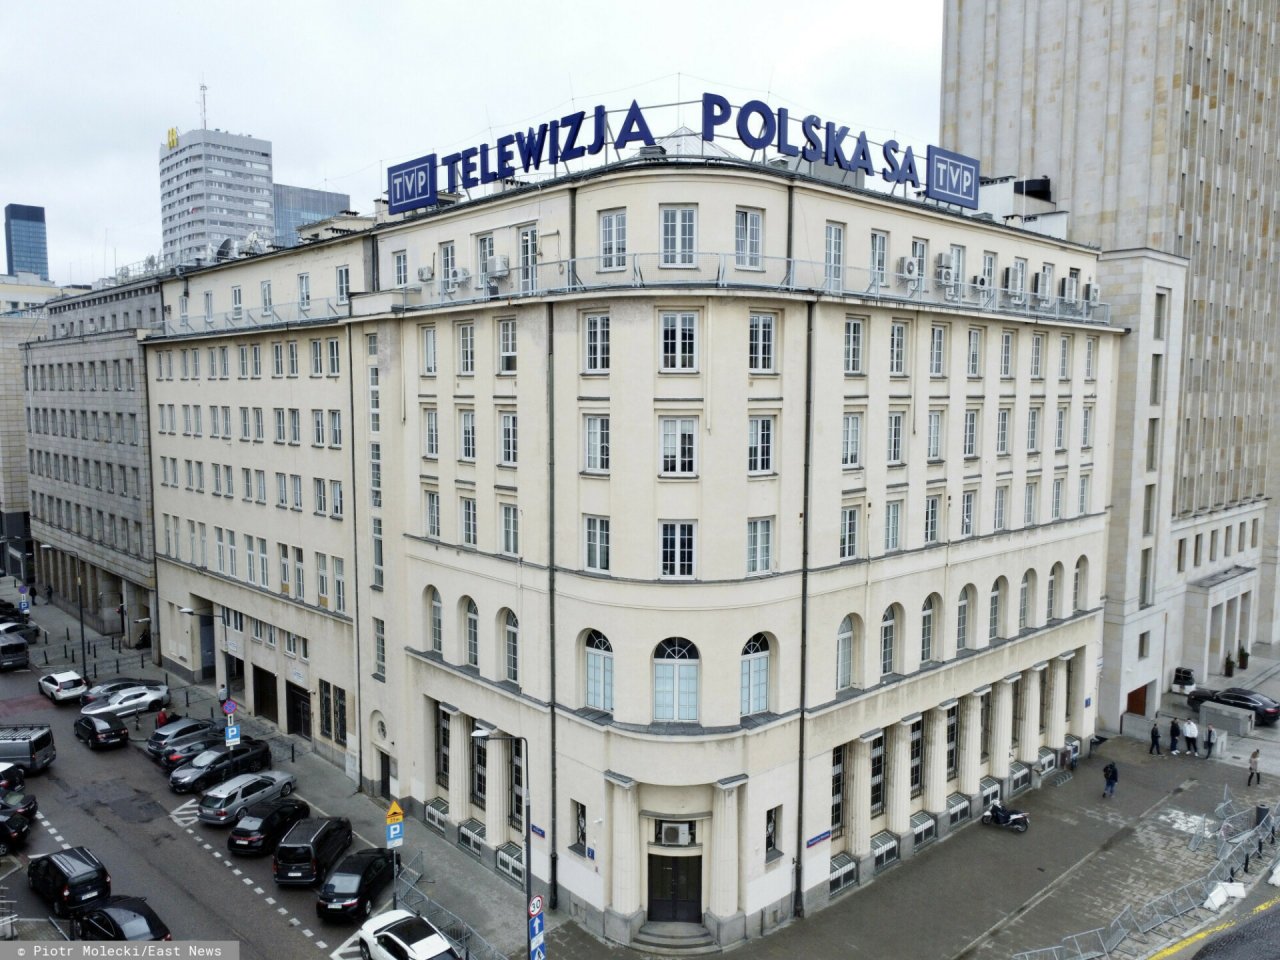 Siedziba Telewizji Polskiej przy Placu Powstancow Warszawy